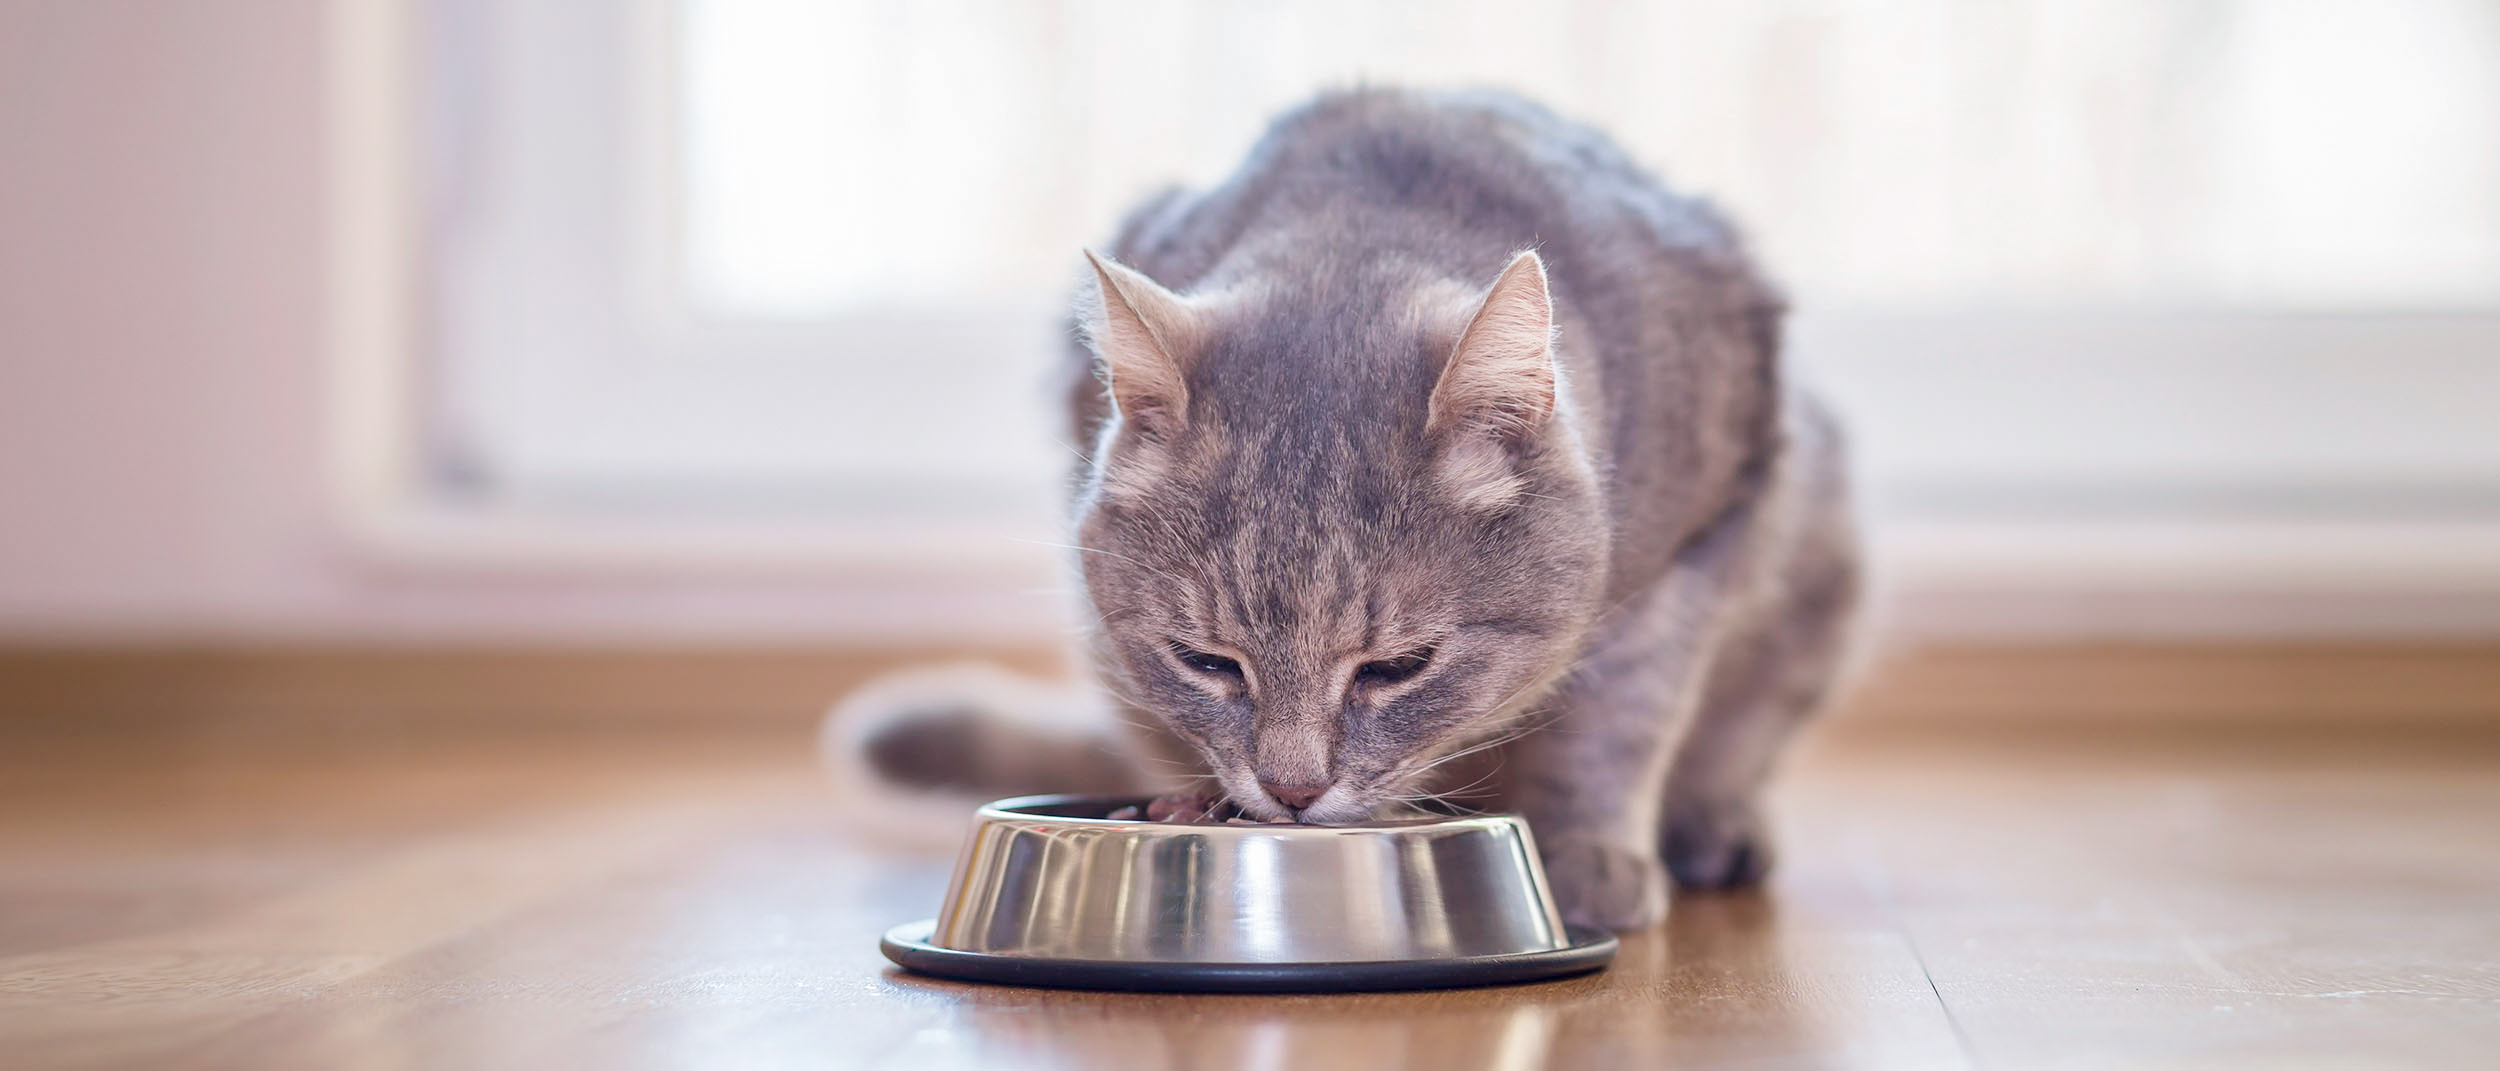 Volwassen kat binnenshuis etend uit een zilveren kom.